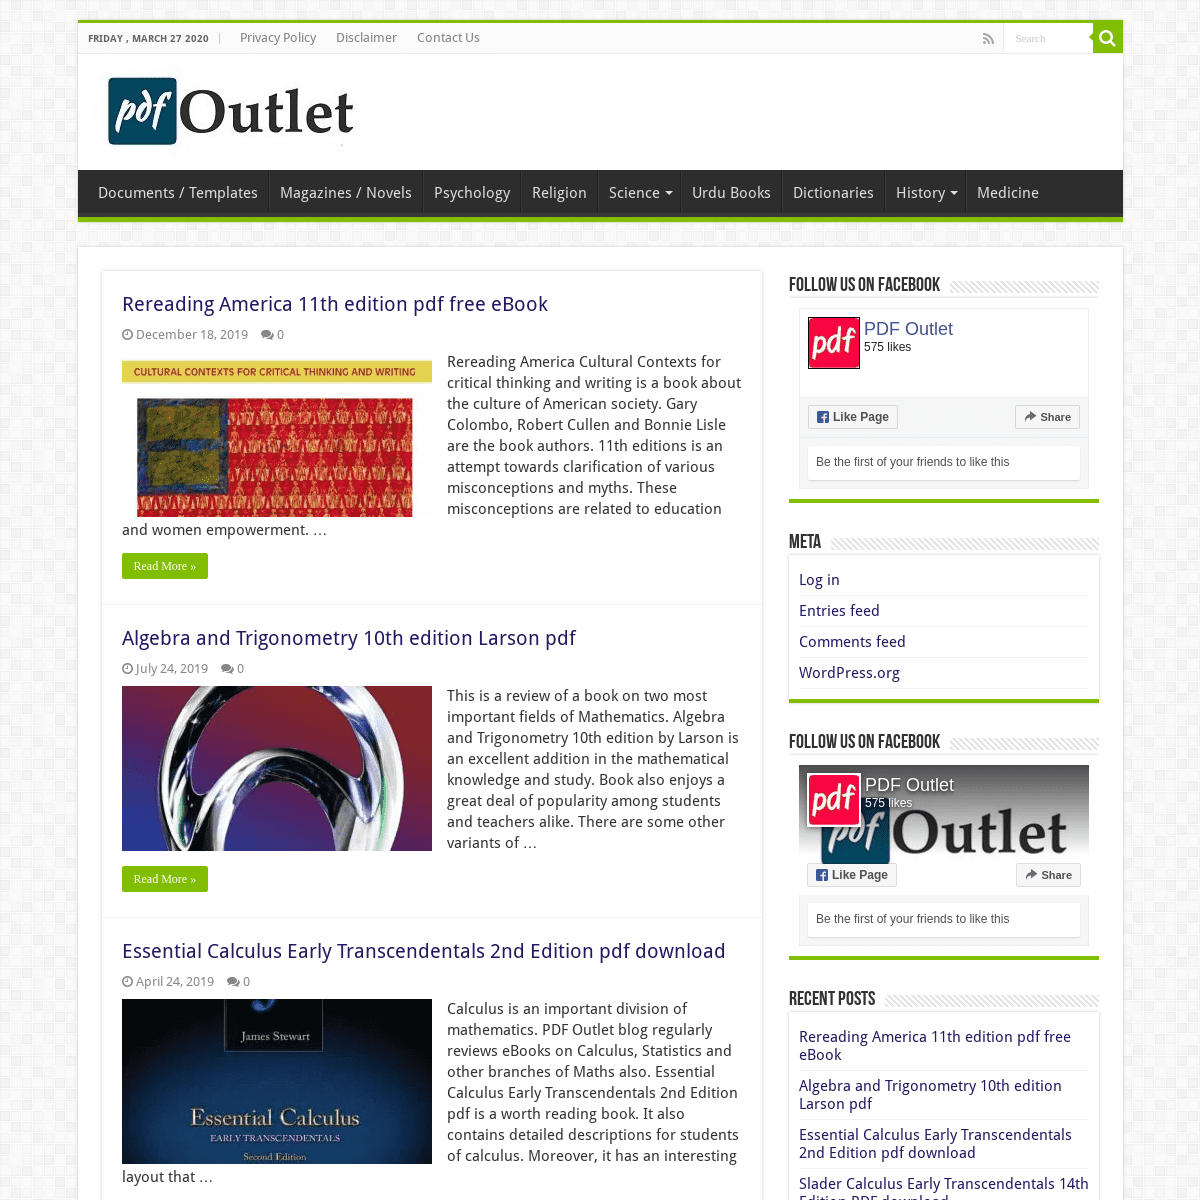 A complete backup of pdfoutlet.com